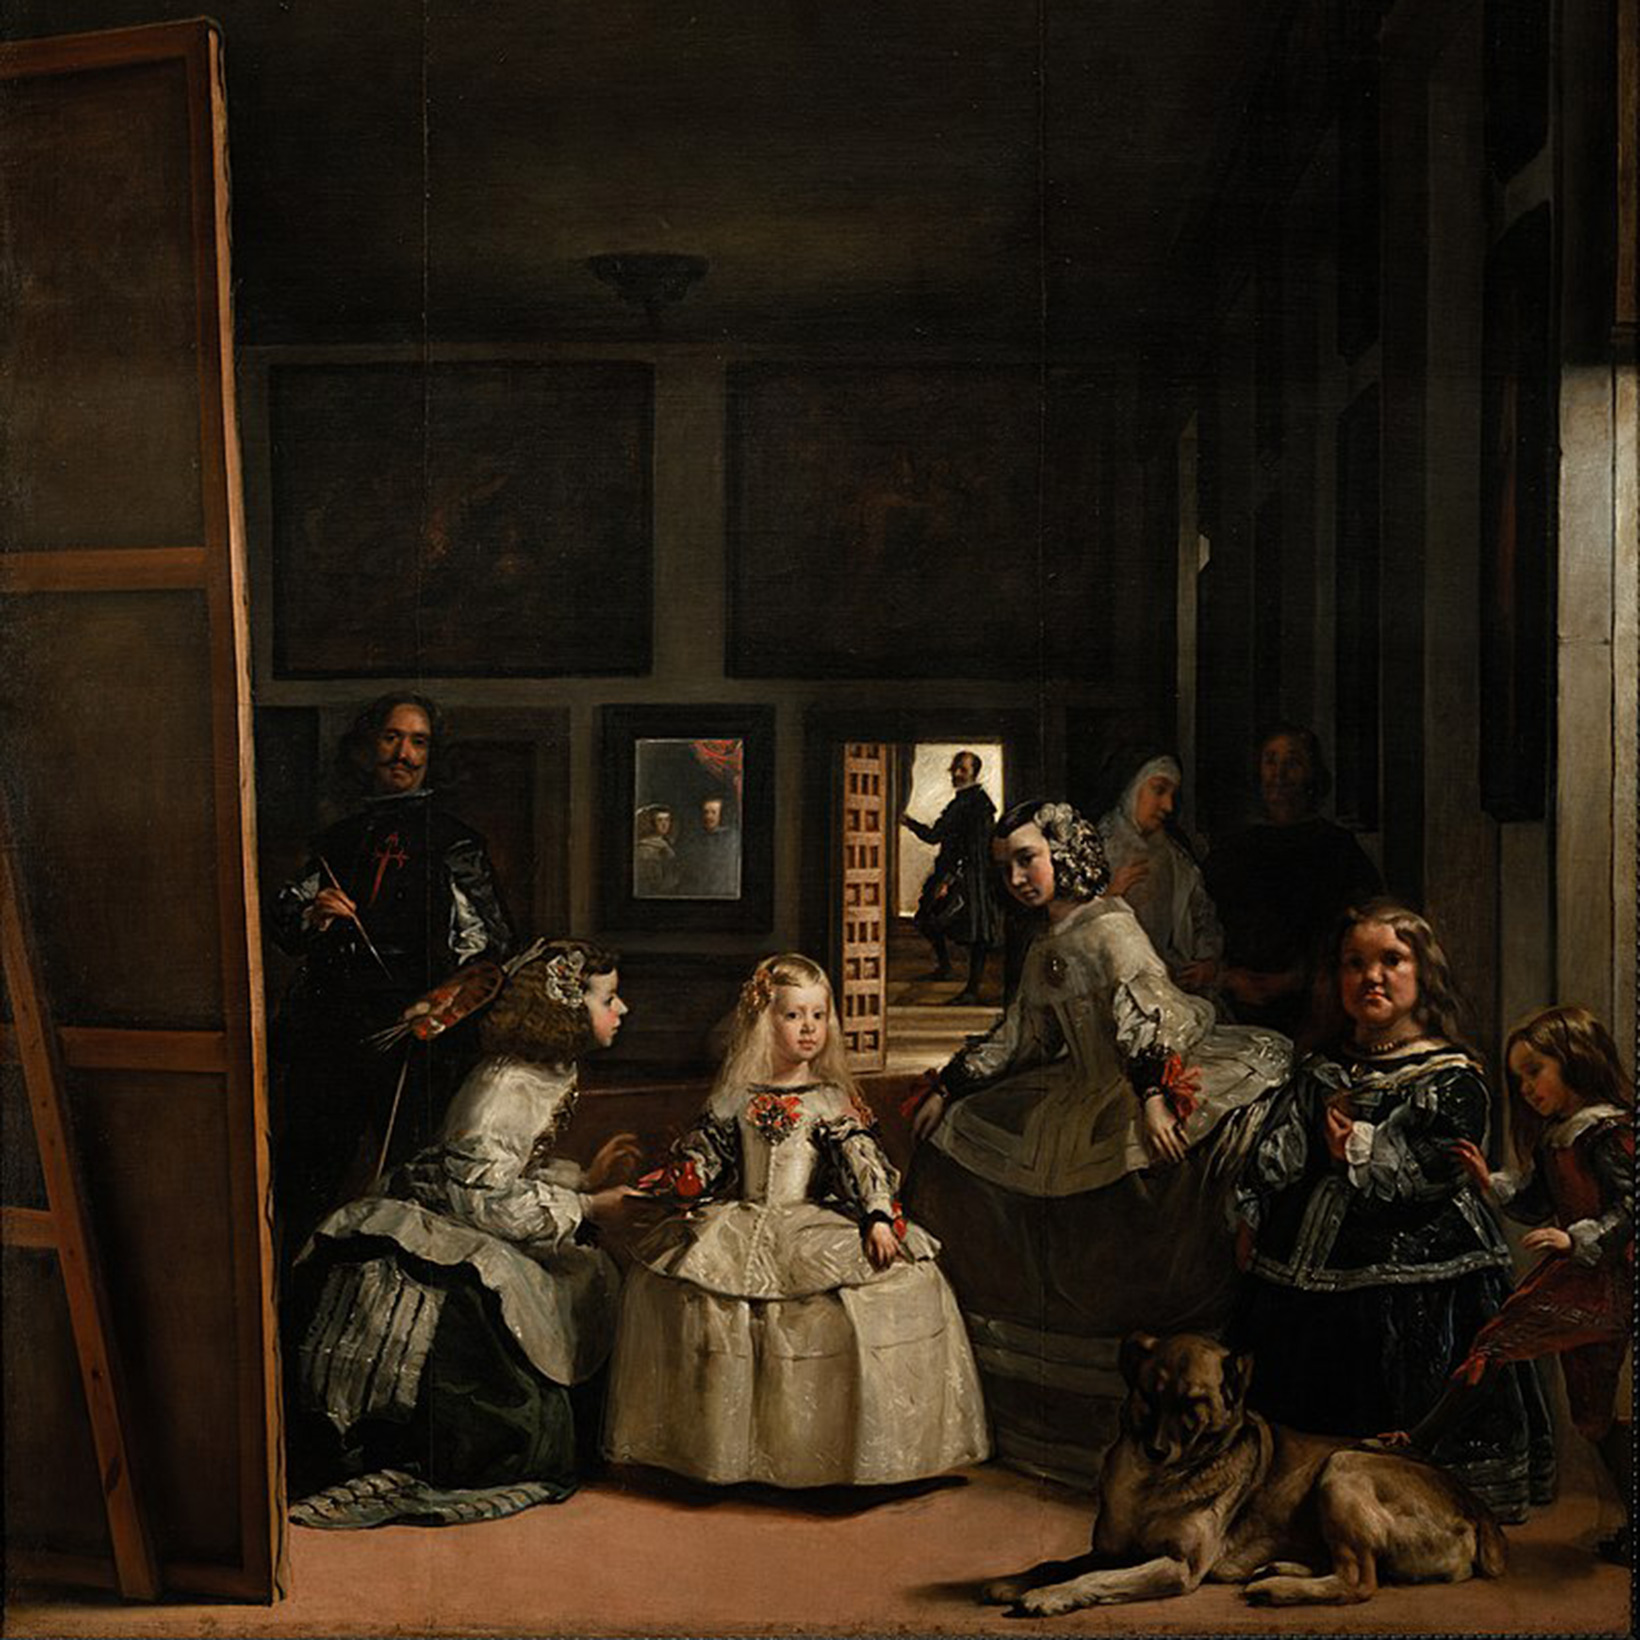 Las Meninas by Diego Velázquez